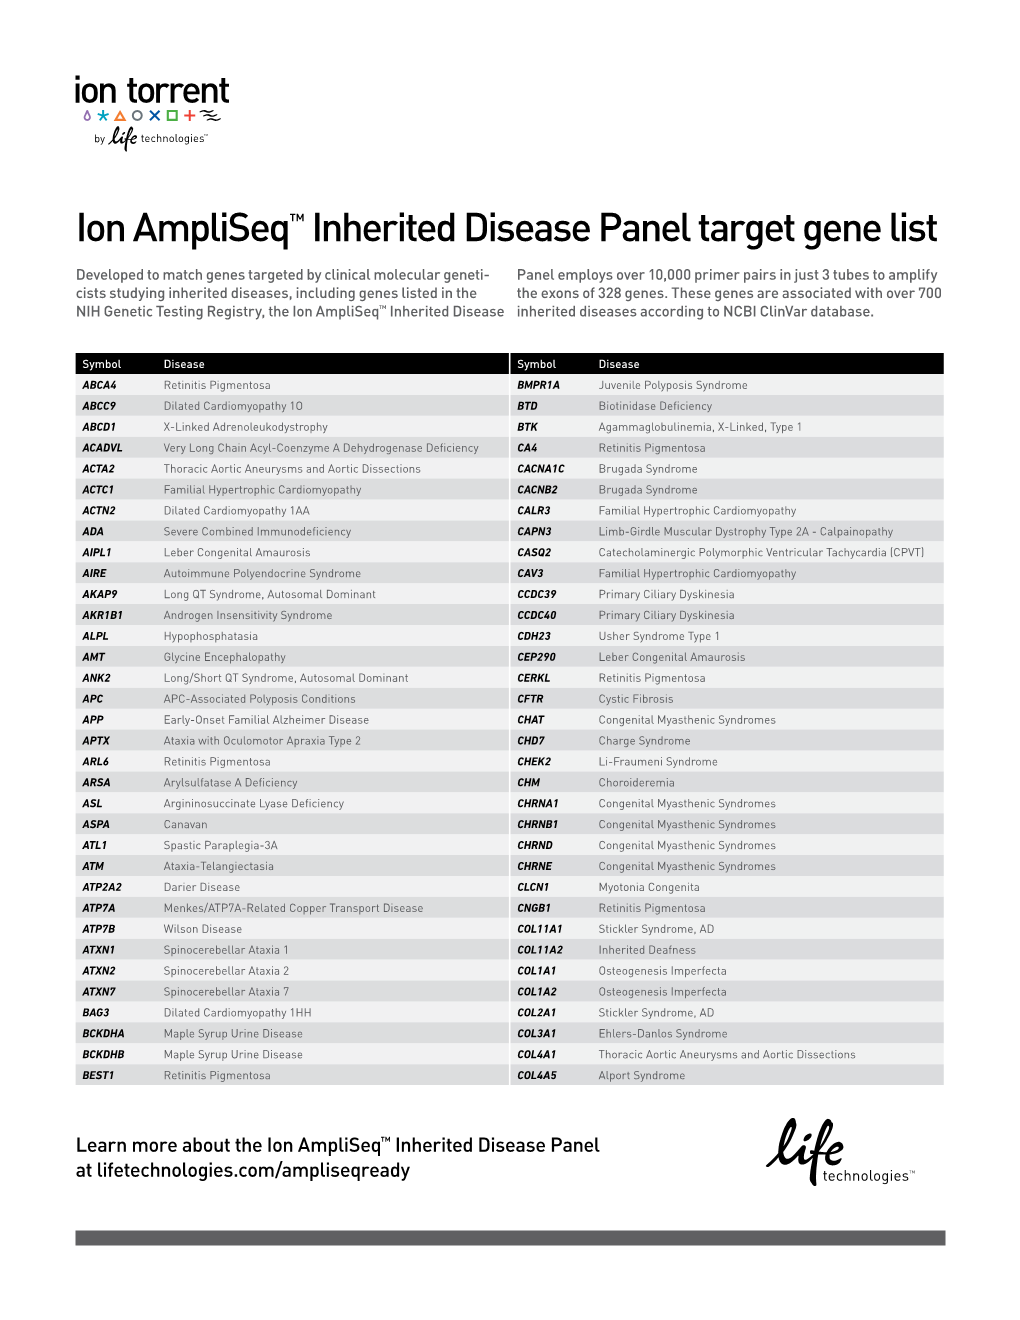 Ion Ampliseq™ Inherited Disease Panel Target Gene List